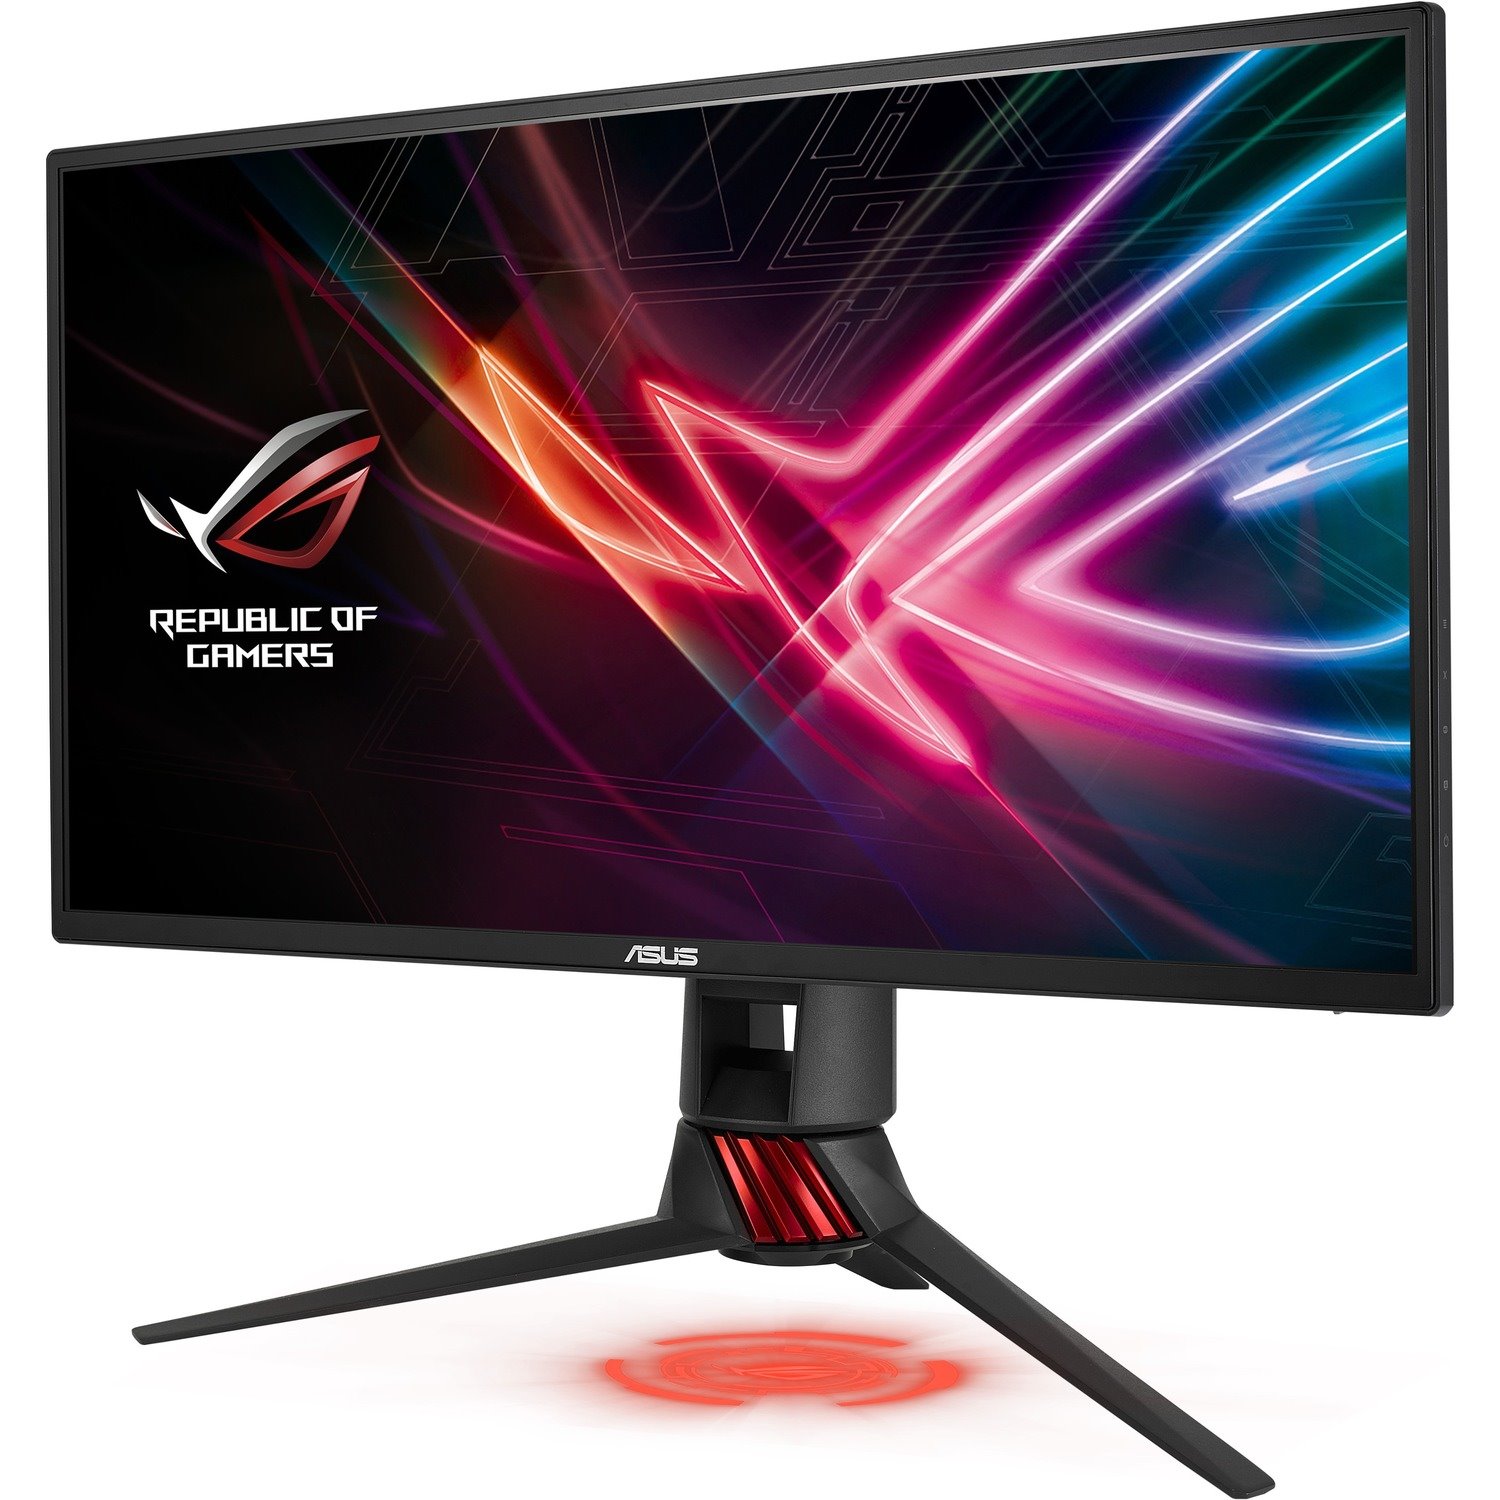 Asus ROG Strix XG258Q 62.2 cm (24.5") Full HD LED Gaming LCD Monitor - 16:9 - Red, Dark Grey